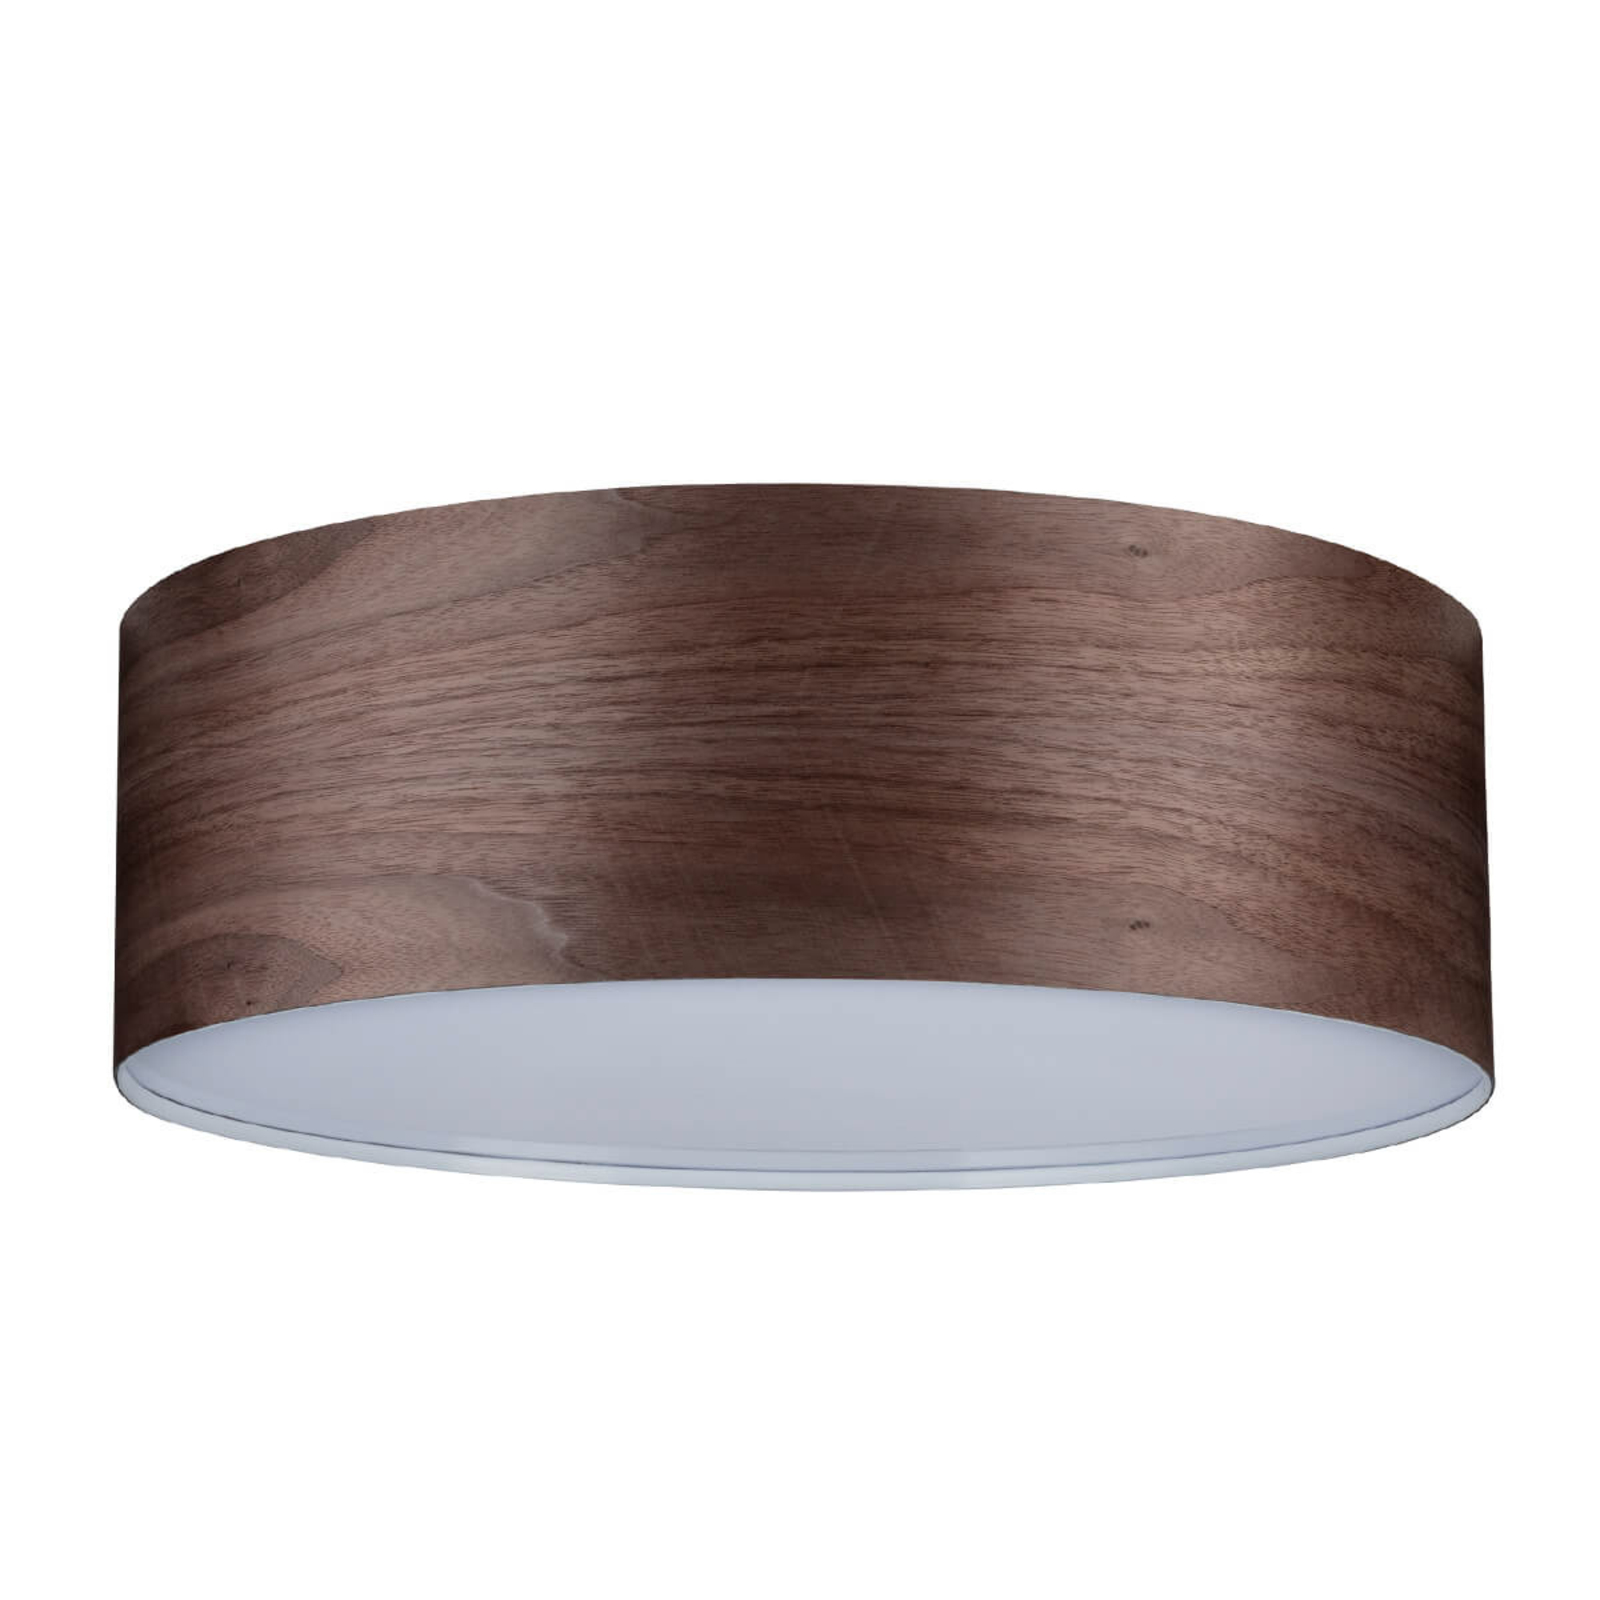 Ultramodern wood ceiling light Liska